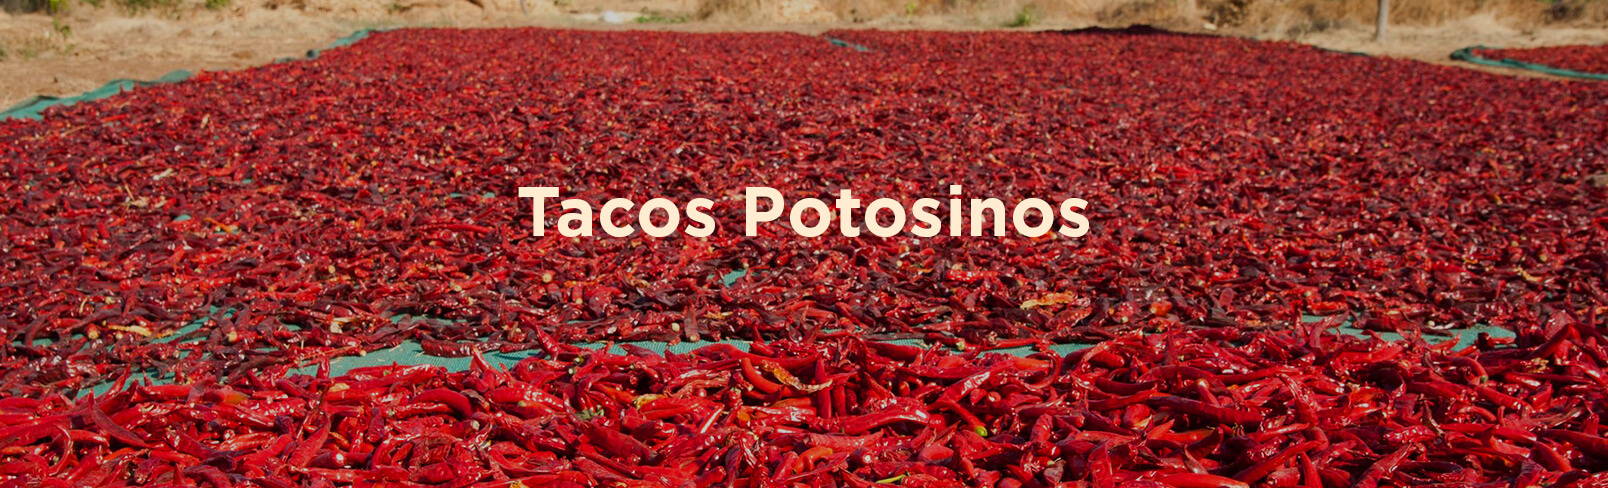 High Quality Organics Express Tacos Potosinos Chile